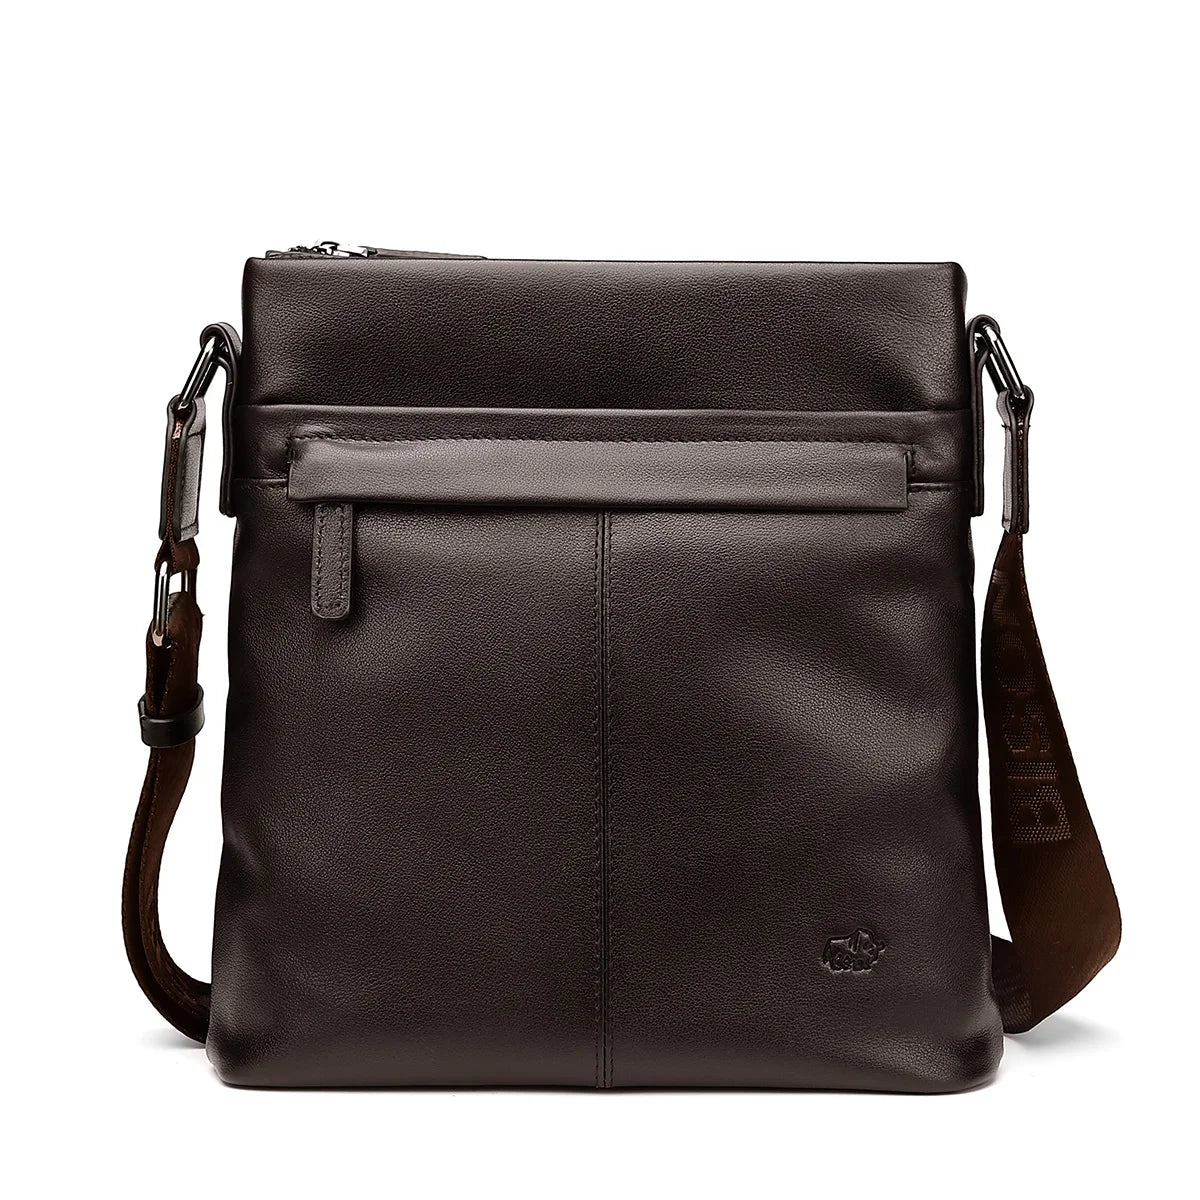 BISON DENIM Soft Genuine Leather Shoulder 10.5" Ipad Messenger Bag N2357-1 Coffee